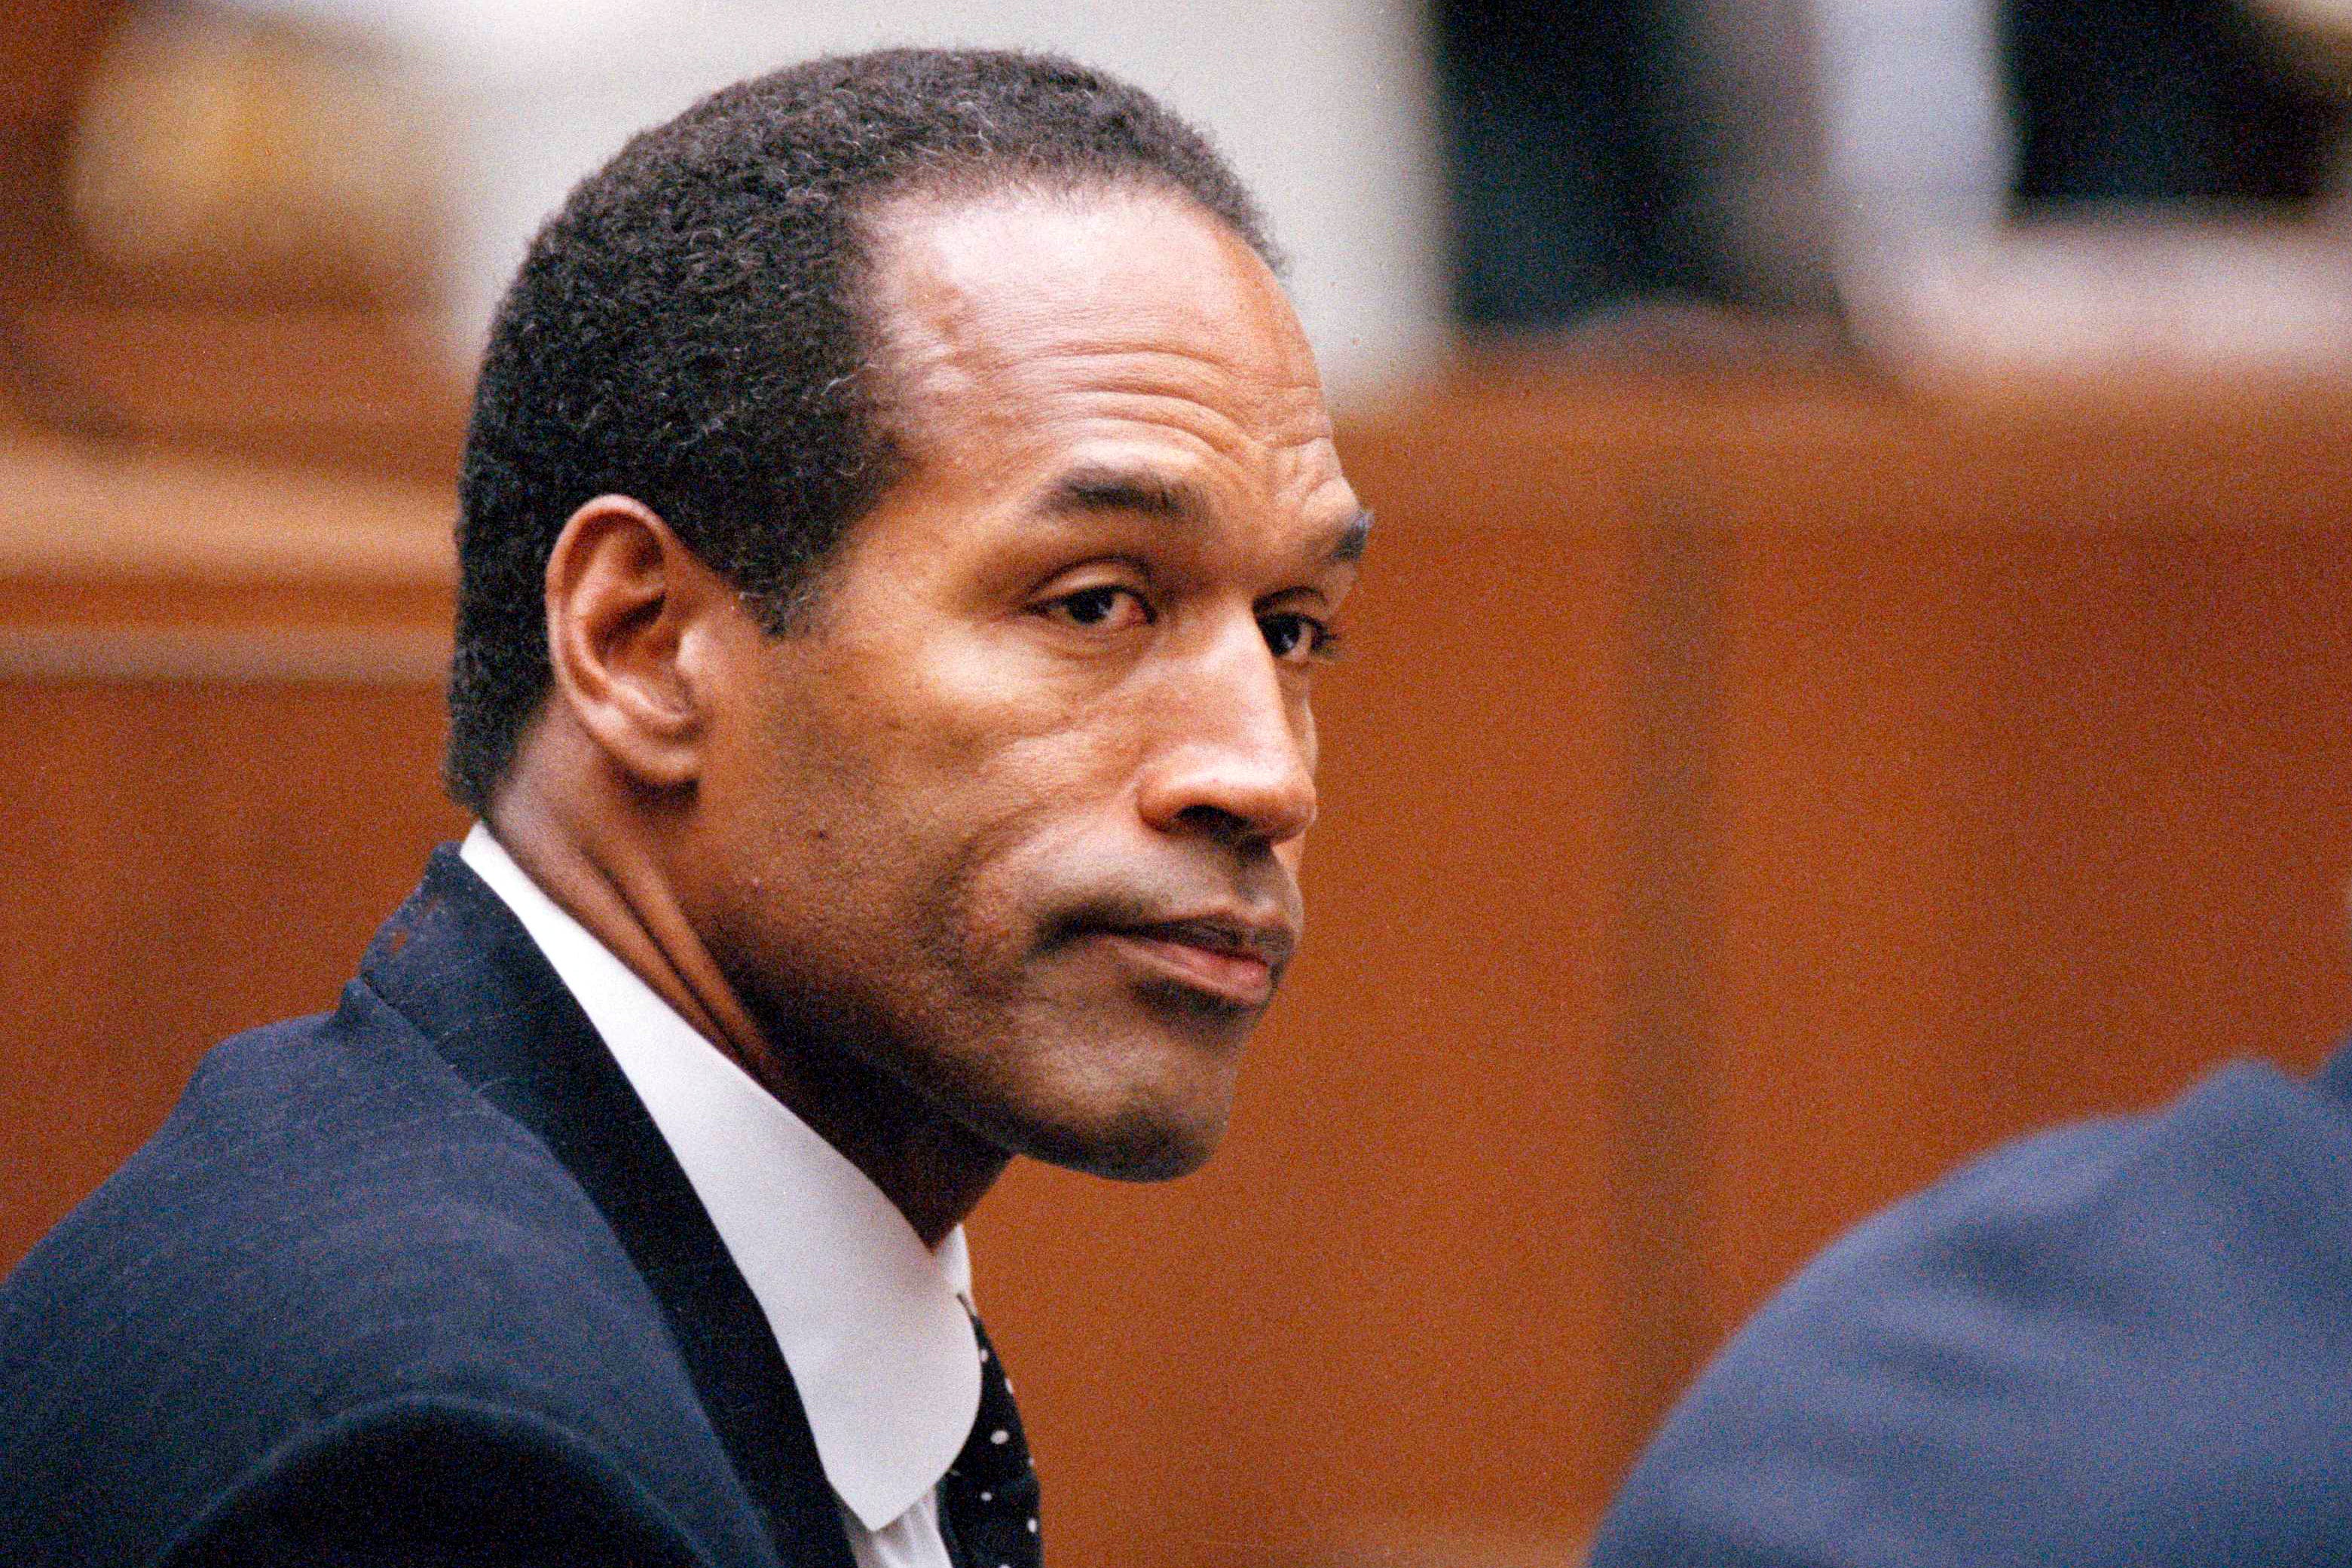 Simpson fue absuelto de los cargos penales que se le imputaon por haber matado a puñaladas a su exmujer y al amigo de esta, Ronald Goldman, en 1994 en Los Ángeles